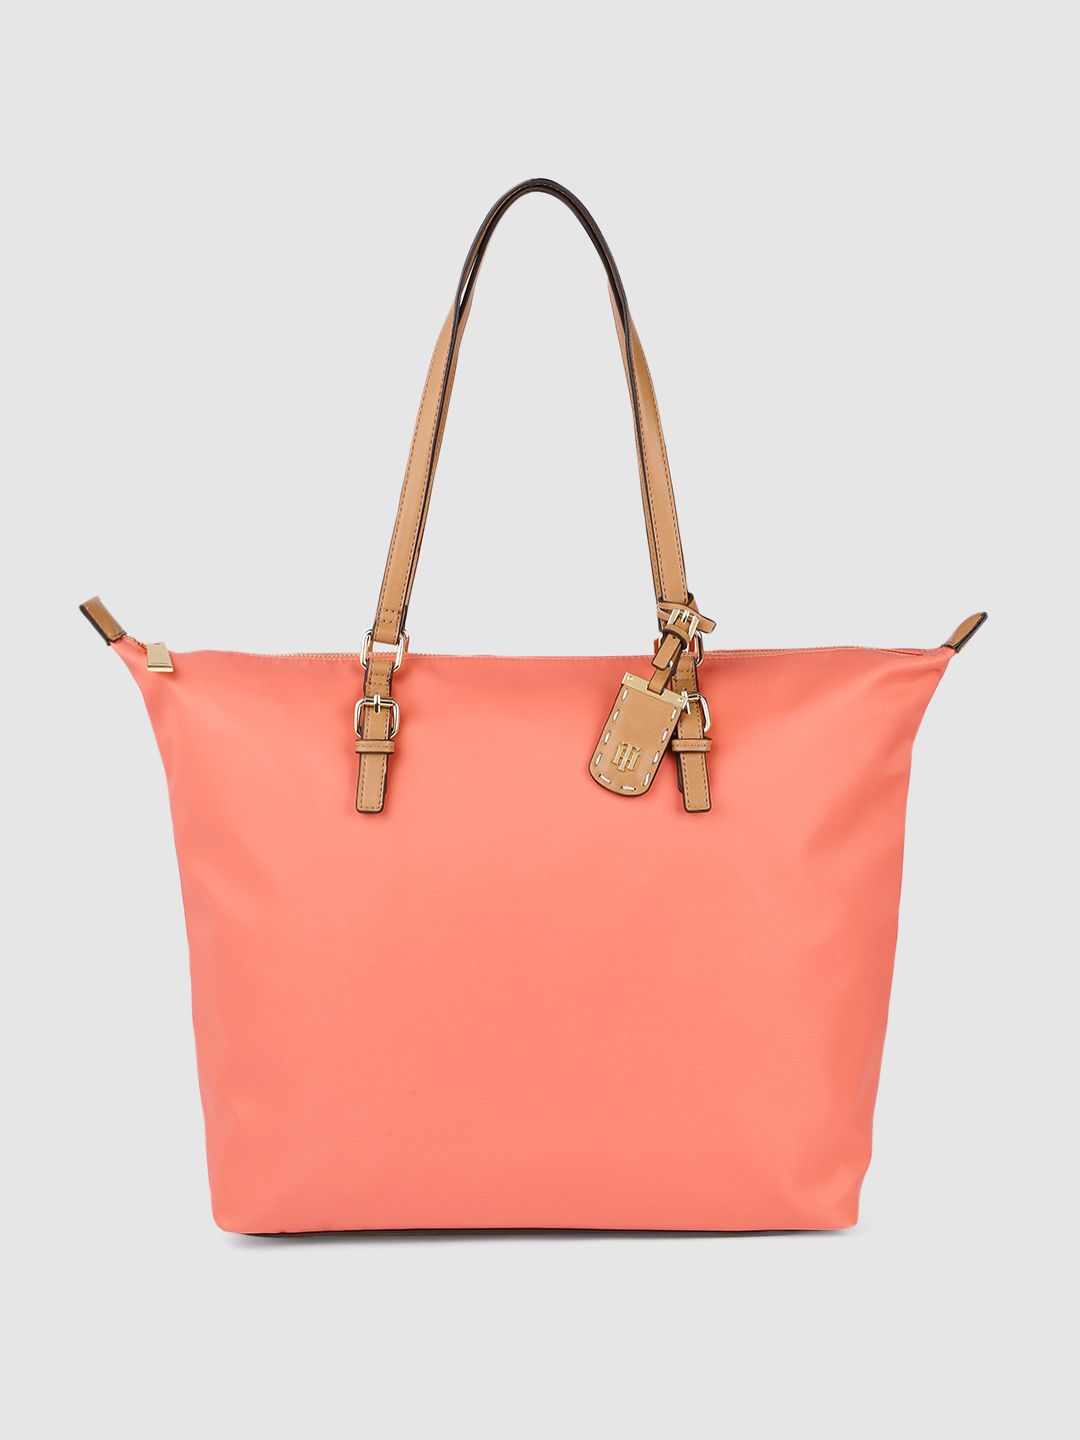 Tommy Hilfiger Pink Solid Shoulder Bag Price in India